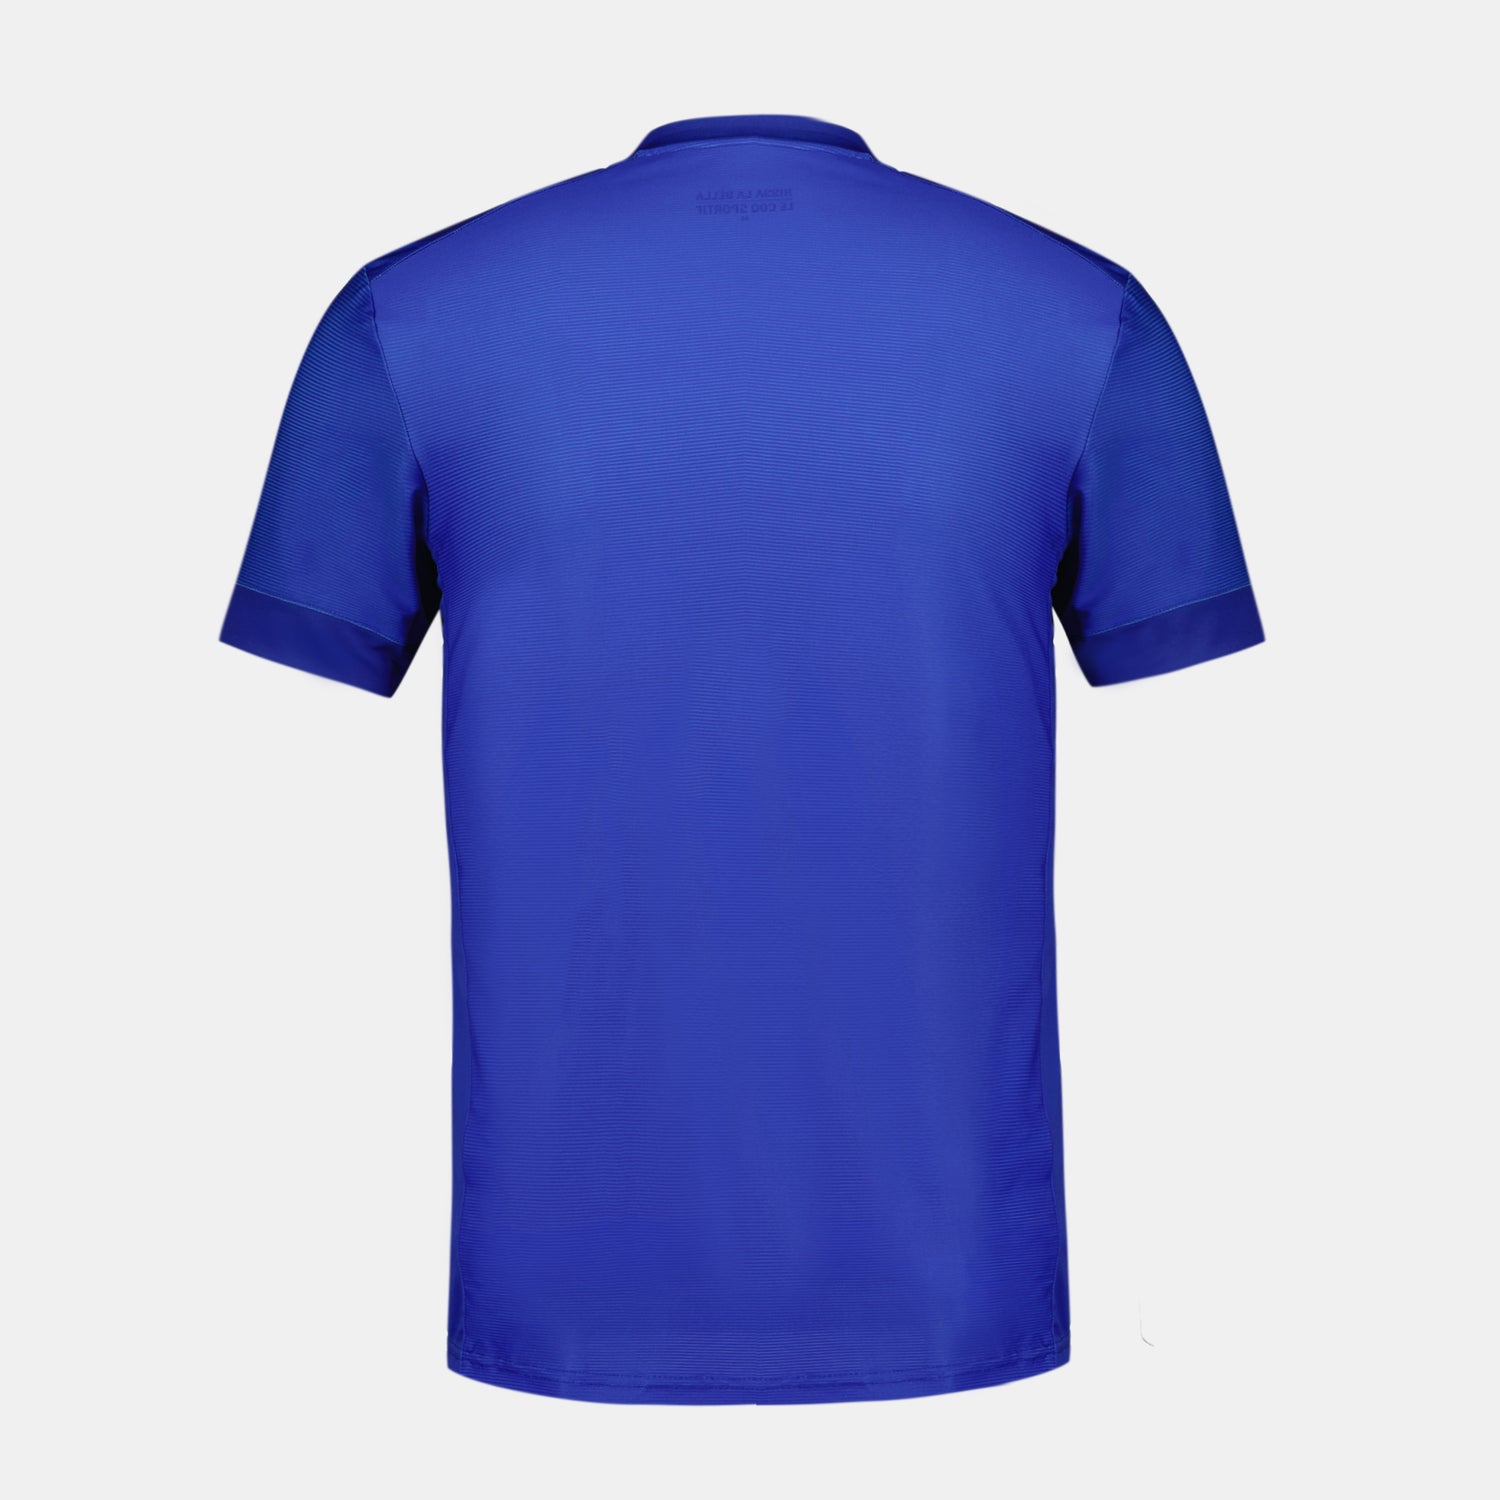 2320991-OGC NICE Maillot Pré Match 23 M Nblue  | Camiseta Prématch 23/24 Hombre